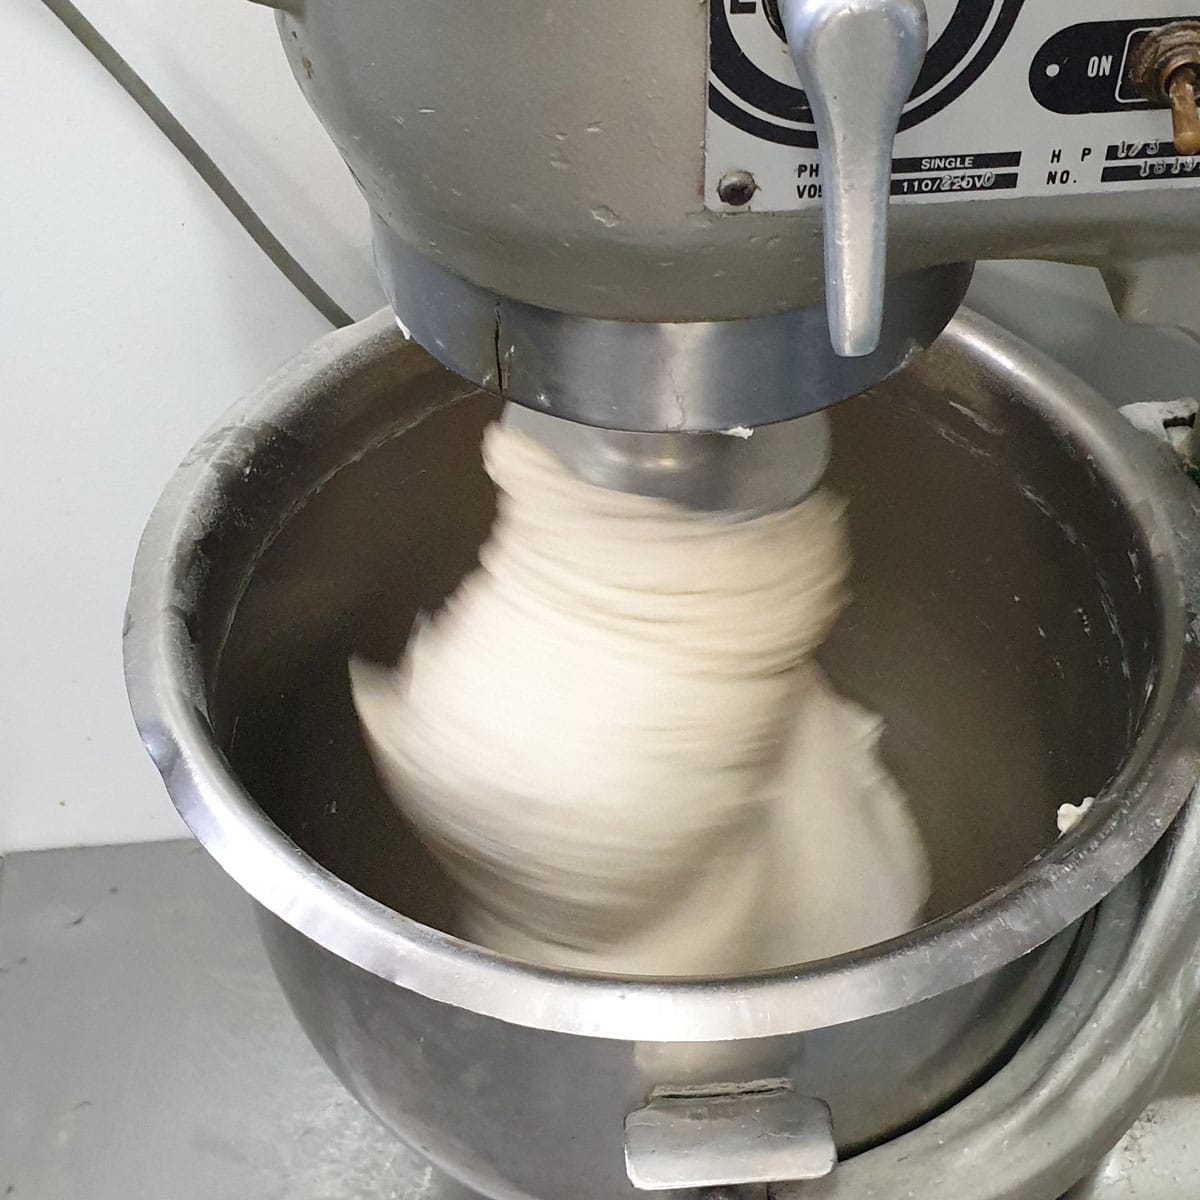 Dough Mixing